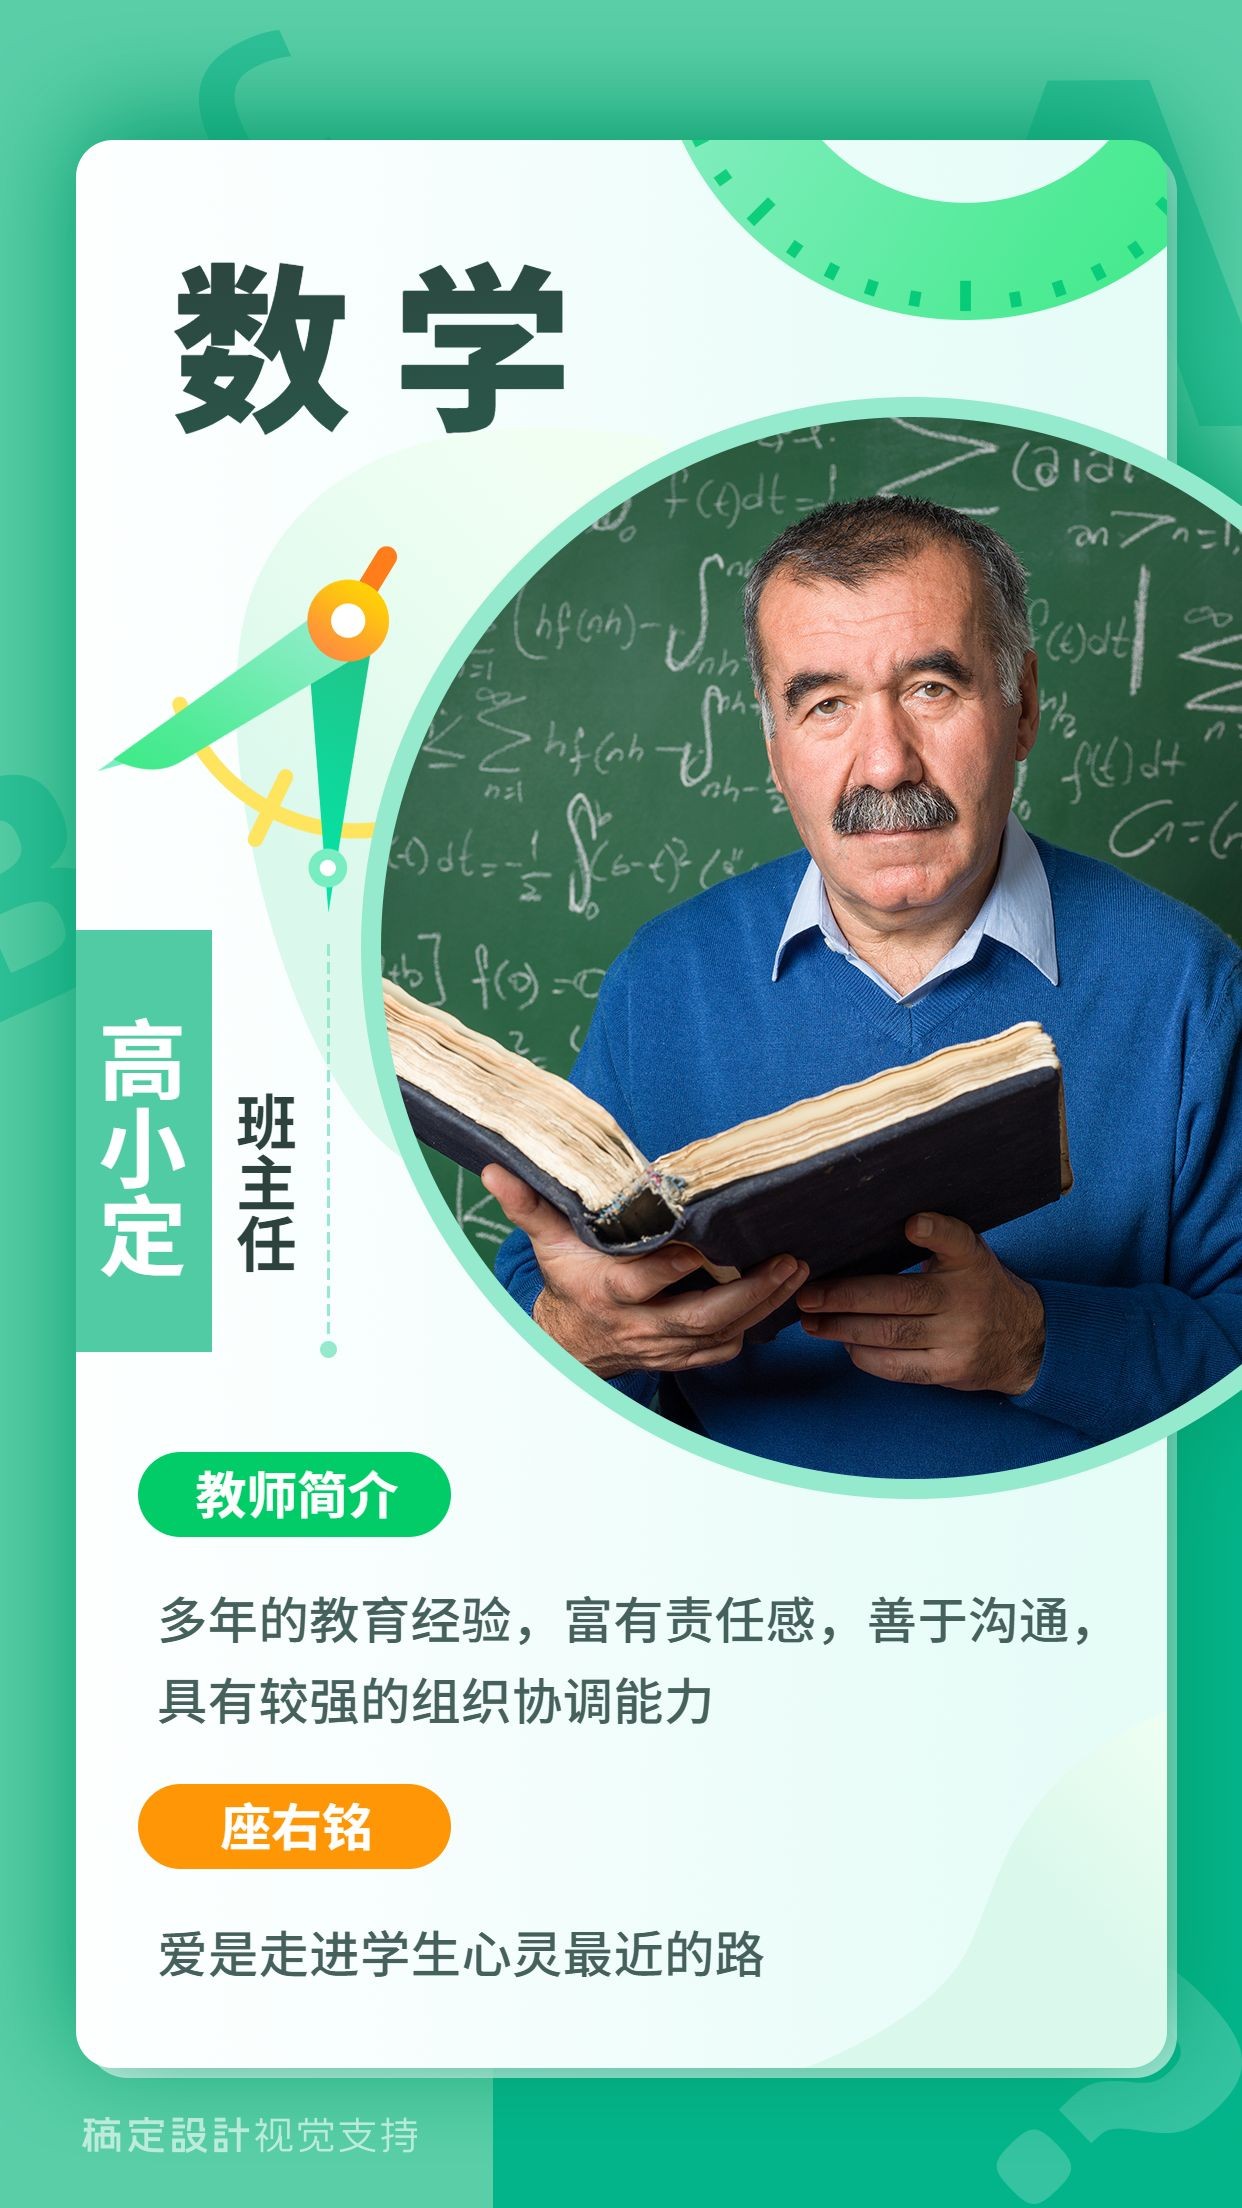 初高中数学老师人物介绍清新海报